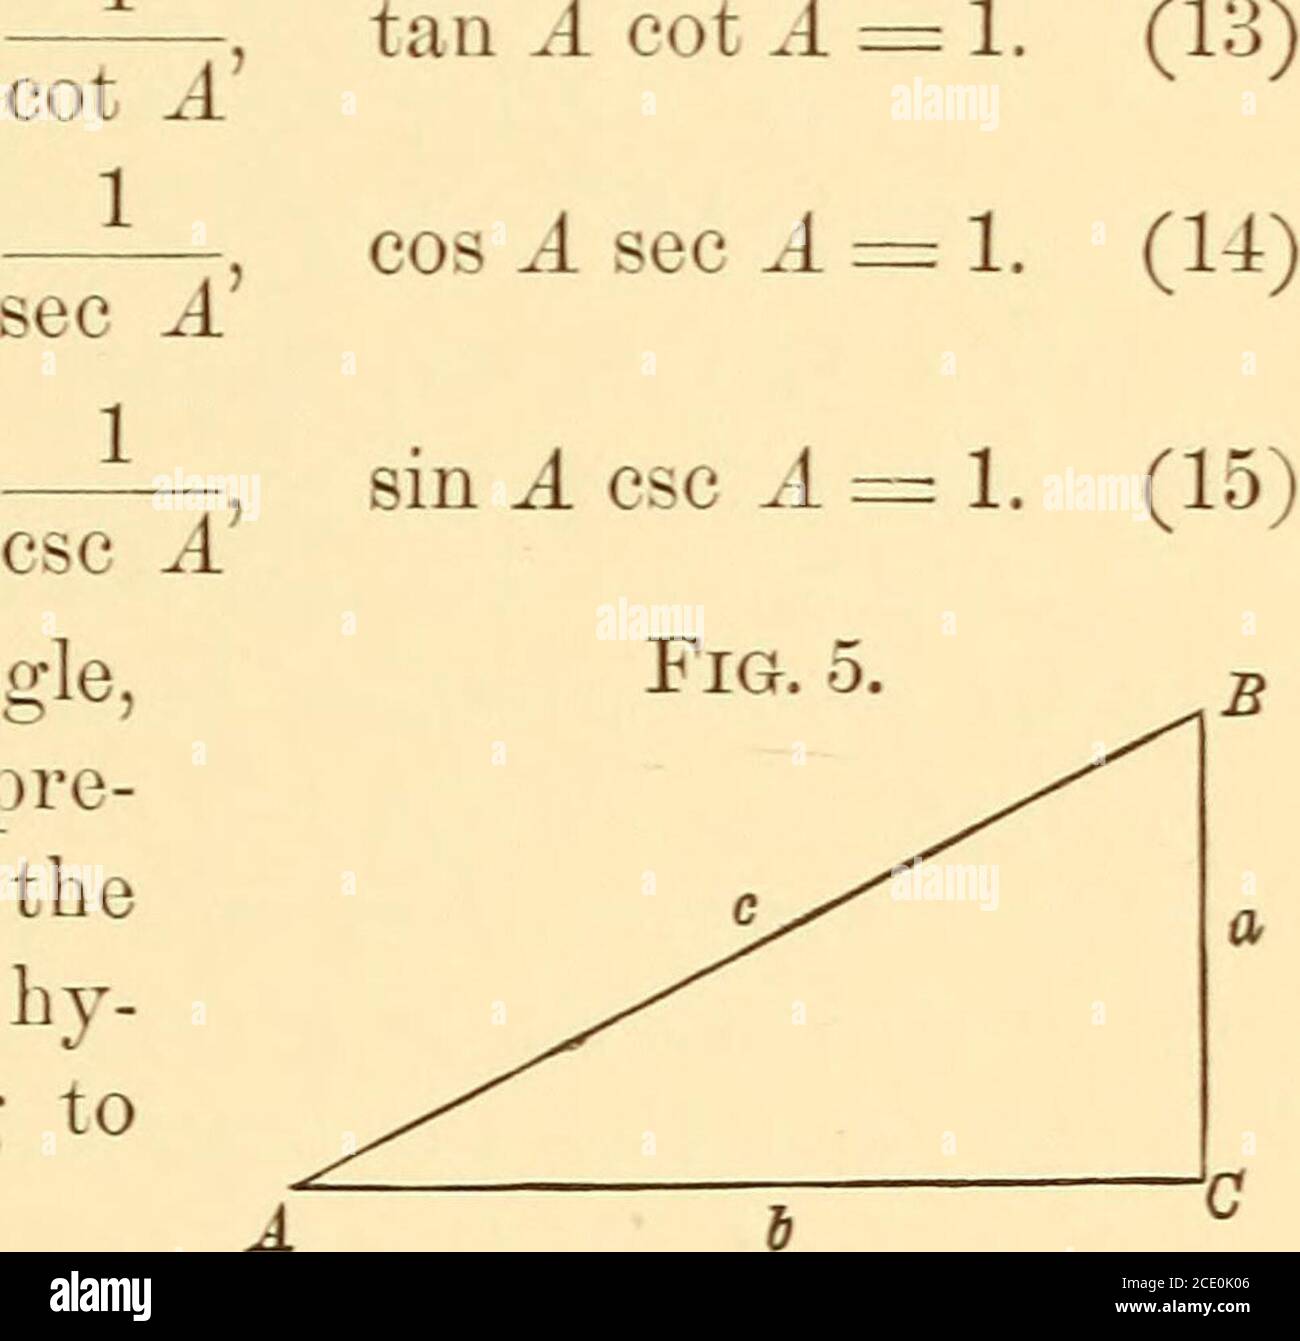 Elementi di trigonometria piana e sferica. Angolo è il reciproco del  thetangent dell'angolo. Così, COT A AG AGXBG B,G ecc. (8) il secante (sec)  di un angolo è il reciproco del